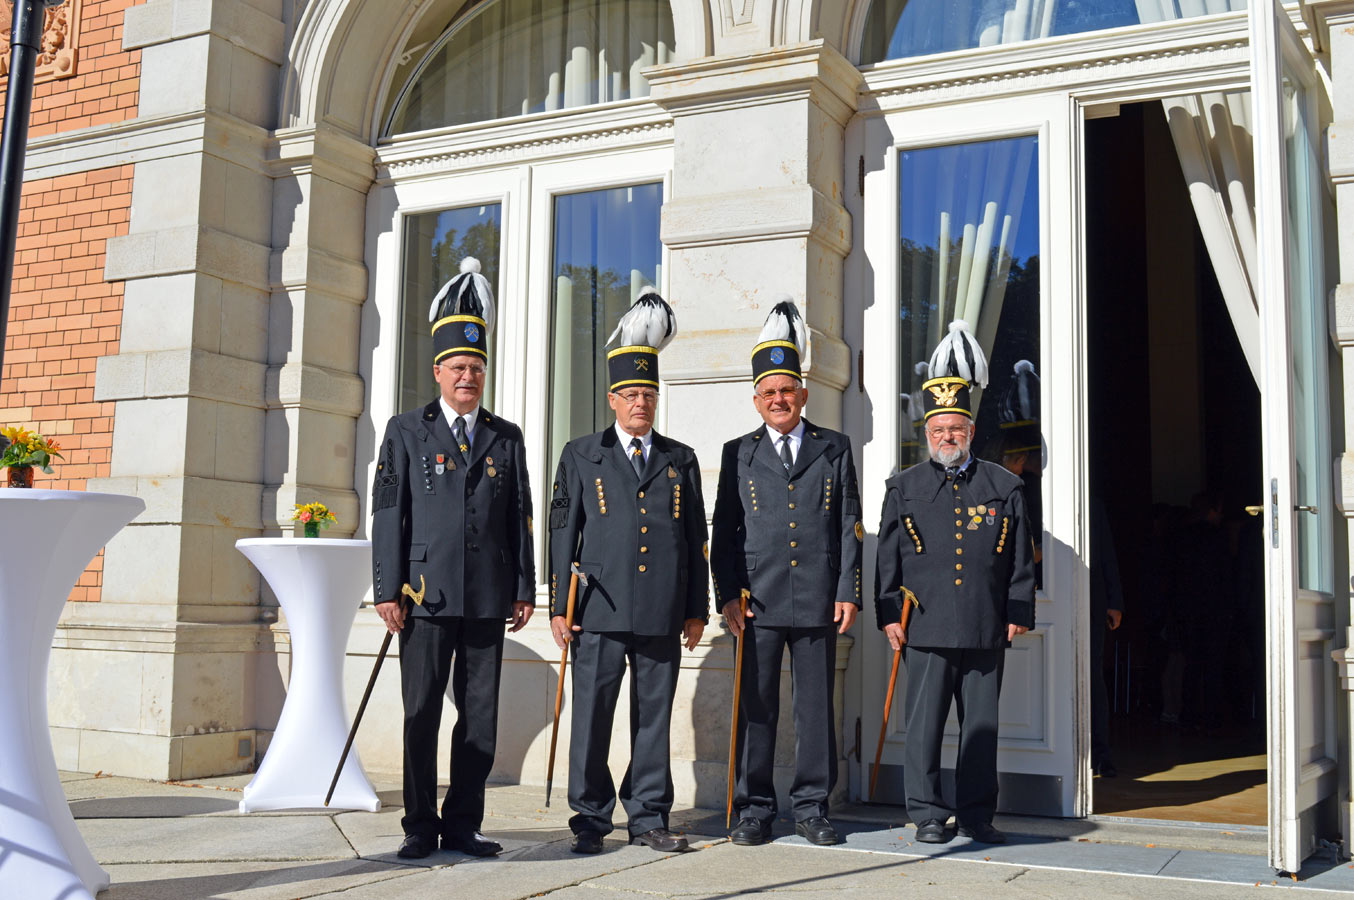 Bild von 4 Männern in Uniform vor einem Haus